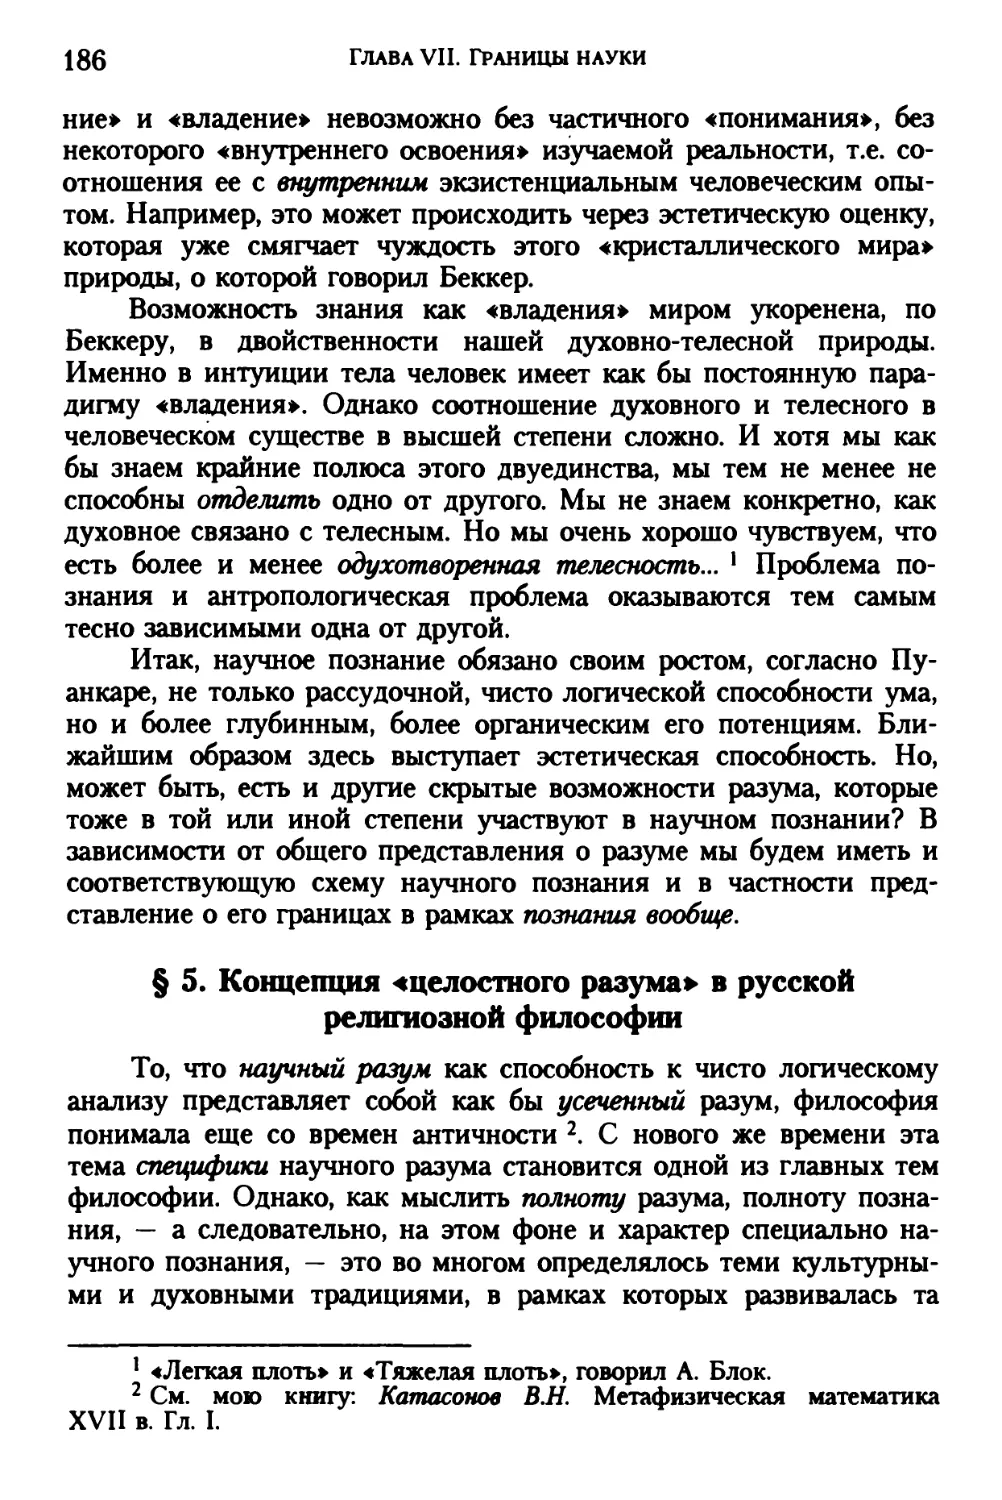 § 5. Концепция «целостного разума» в русской религиозной философии